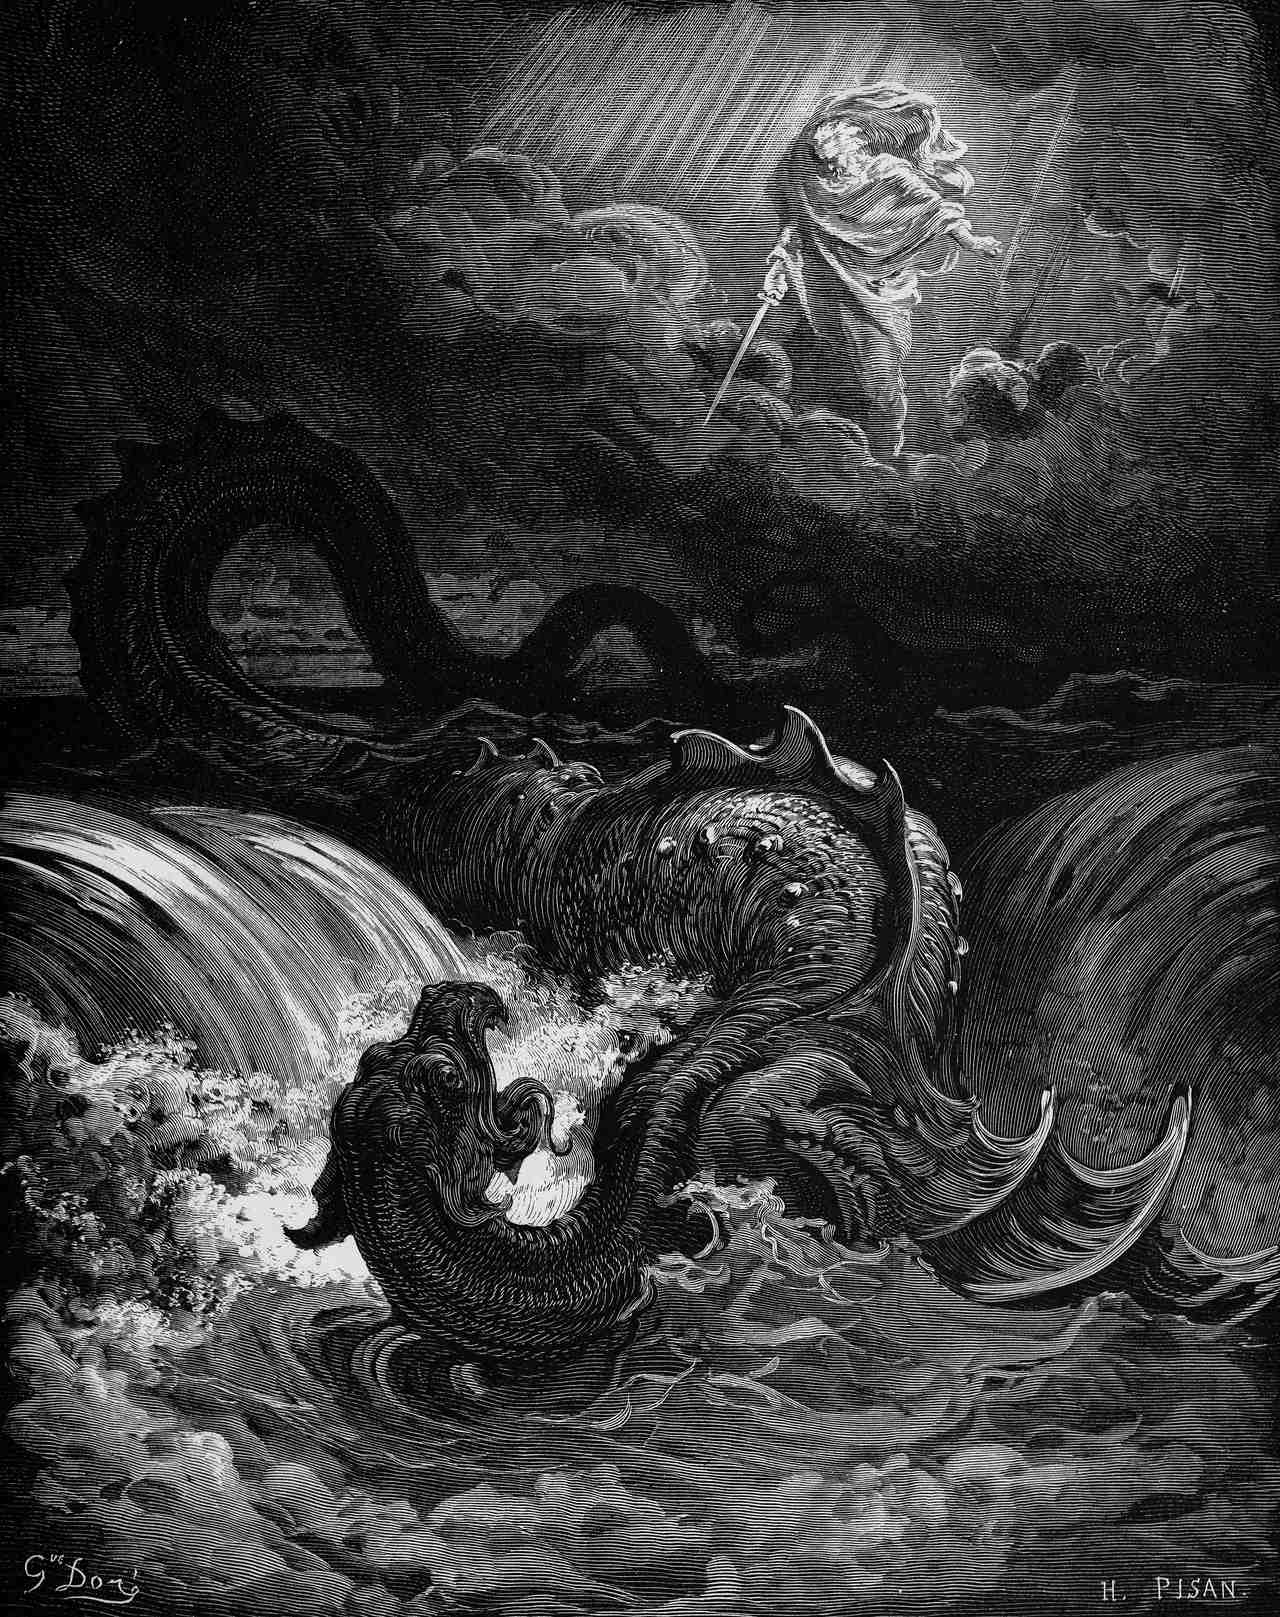 Leviathan: Este imposibil să învingi acest monstru marin antic! 3